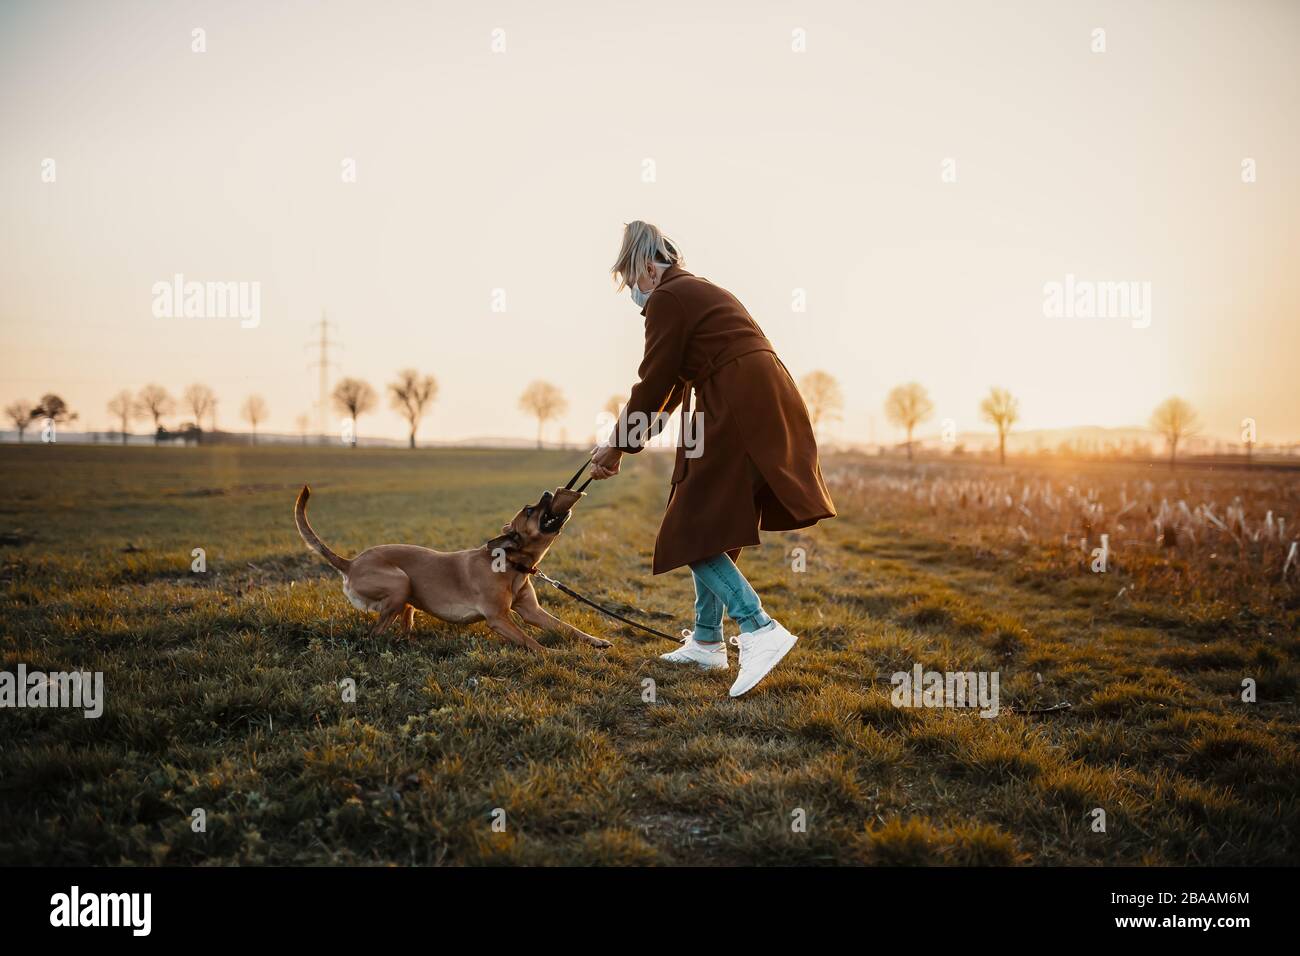 Une femme portant un masque de protection marche seule avec un chien à l'extérieur en raison de la pandémie de virus corona covid-19 Banque D'Images